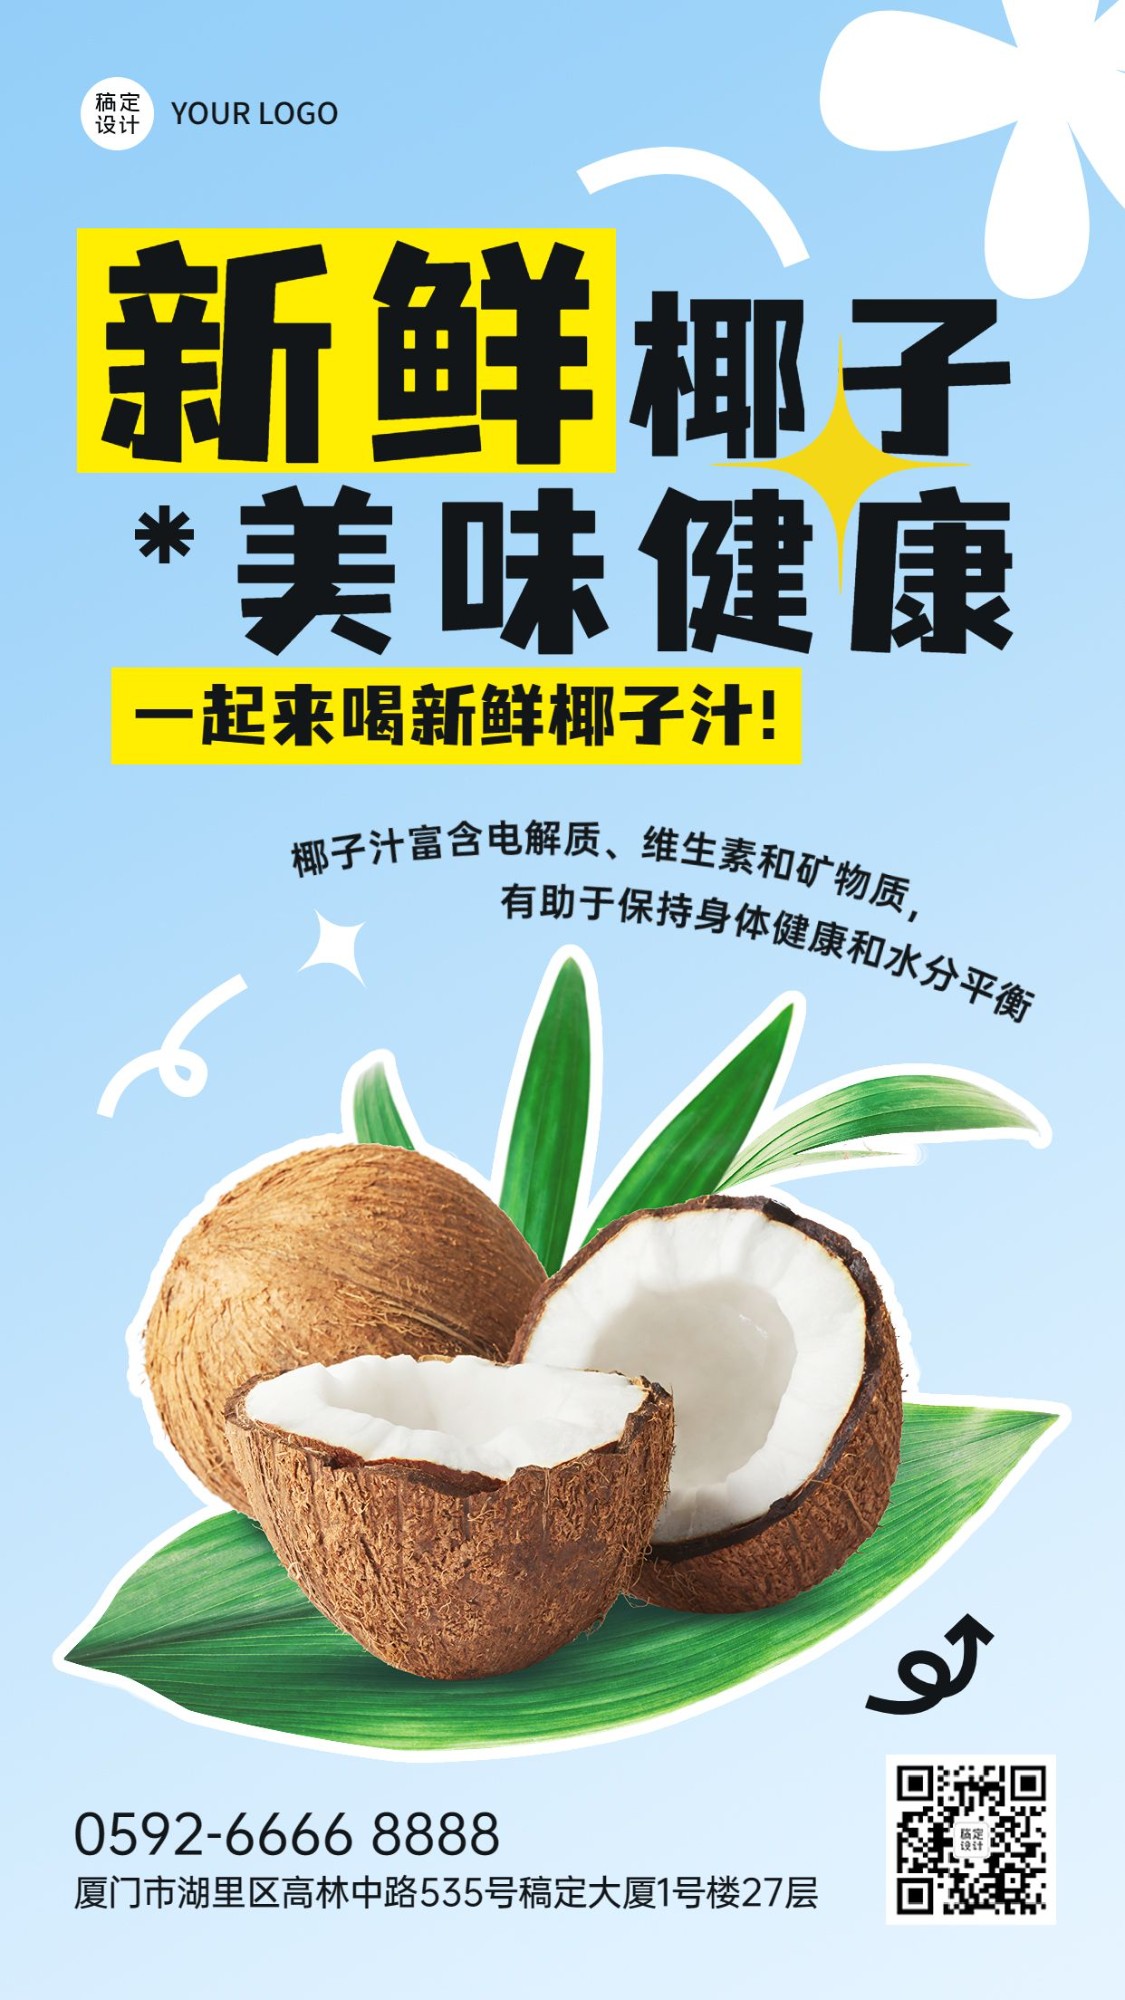 水果捞营销食品生鲜水果椰子产品展示竖版海报